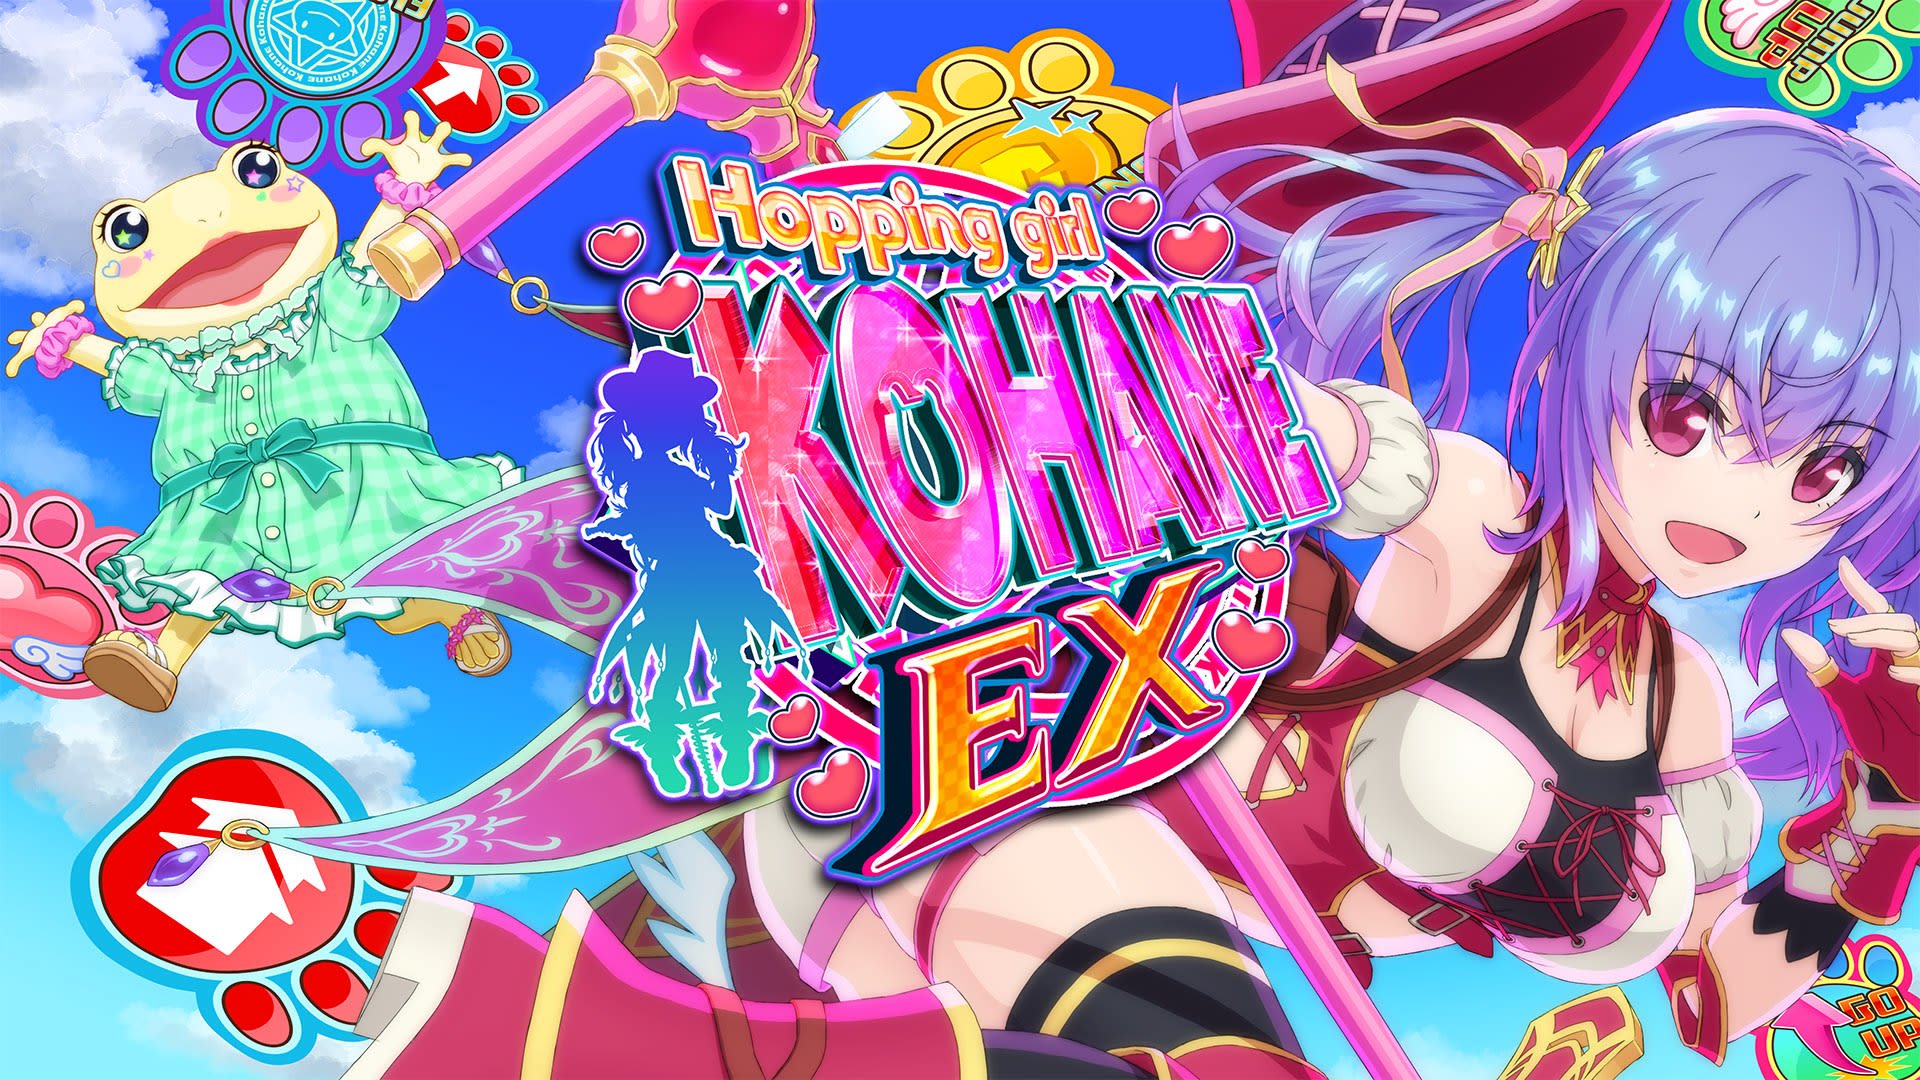 Hopping Girl Kohane EX